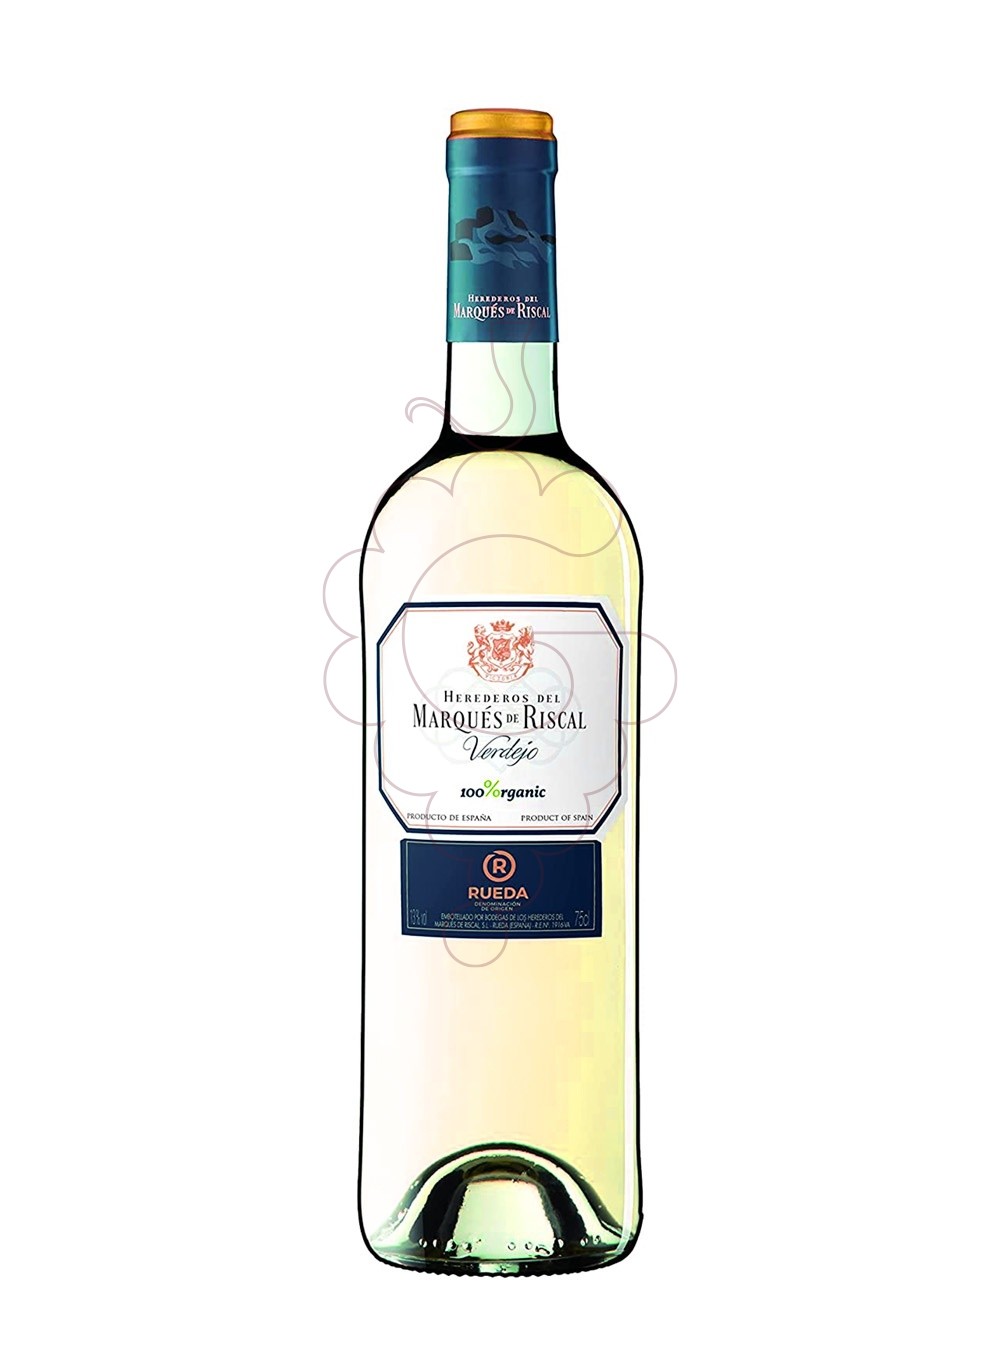 Foto Marqués de Riscal Verdejo vino blanco